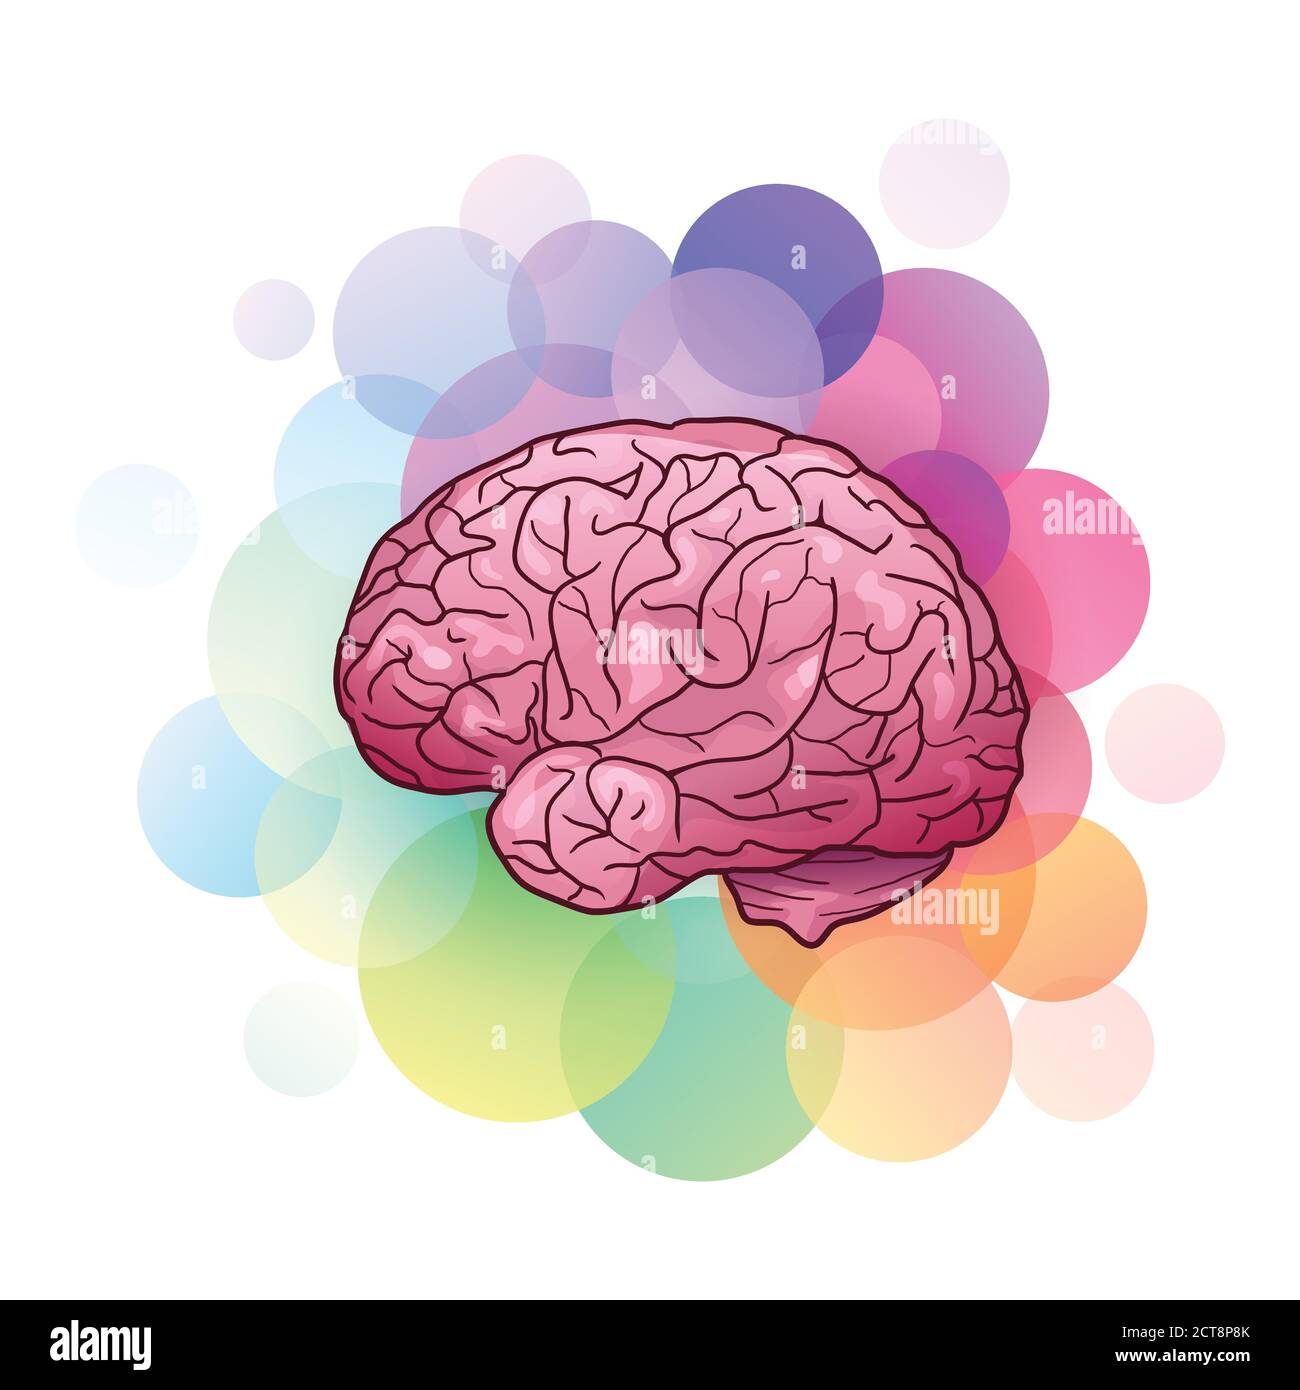 Ilustración de dibujos animados del cerebro humano con luces y sombras con  círculos coloridos. Vista lateral. Creatividad e inspiración. El objeto  está separado f Imagen Vector de stock - Alamy